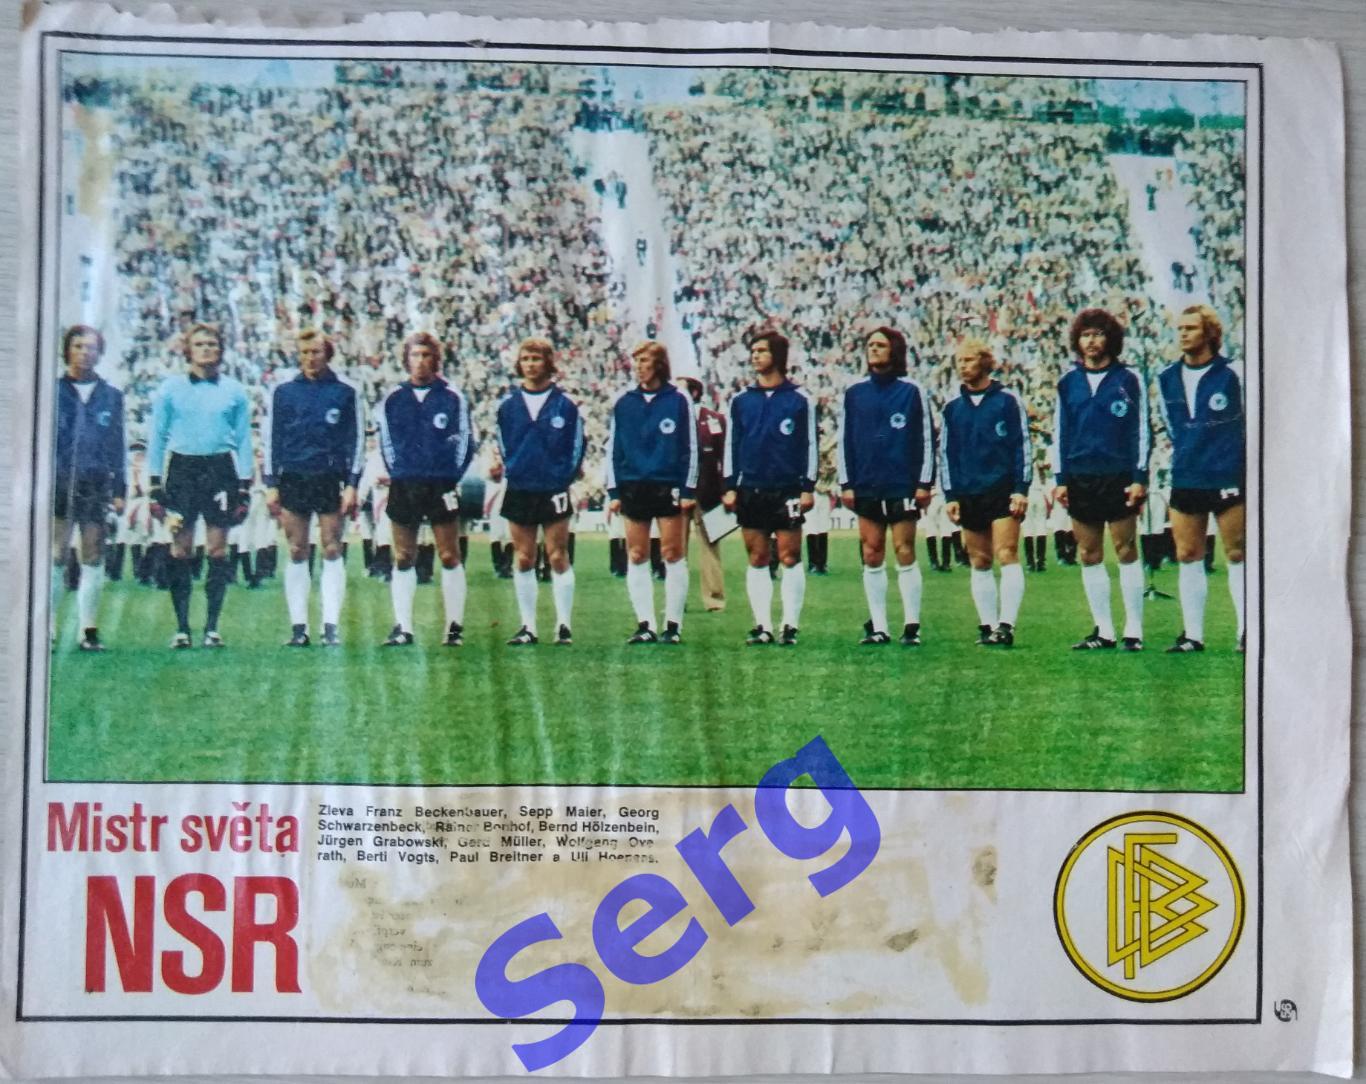 Постер ФРГ из журнала Стадион (Stadion) 1974 год